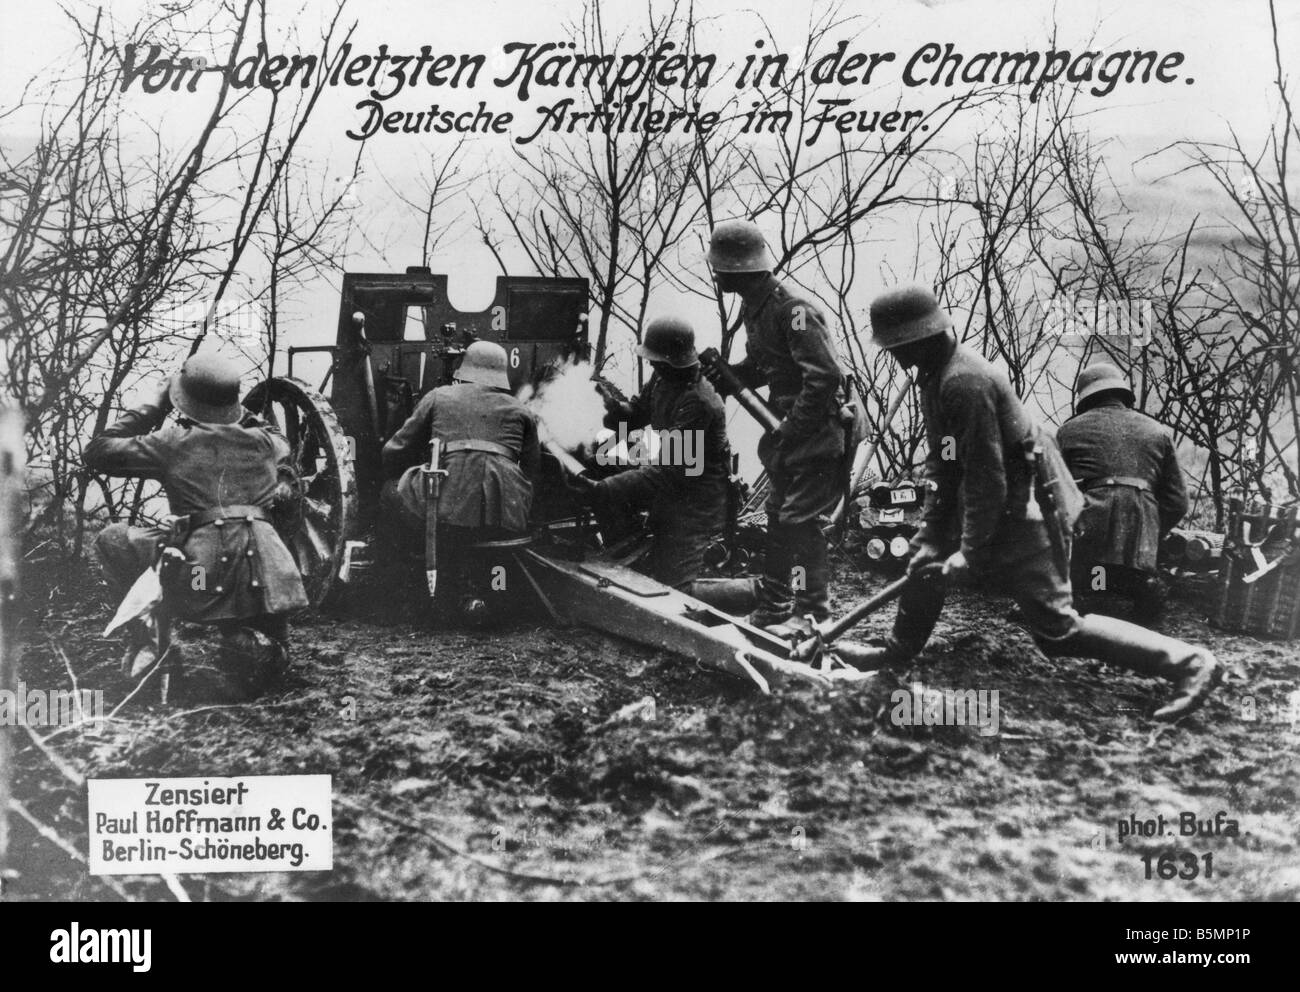 9 1914 0 0 A25 Ger 1914 Artillerie 18 Guerre Mondiale 1 1914 18 Front de l'Ouest l'artillerie allemande en Champagne Photo Banque D'Images